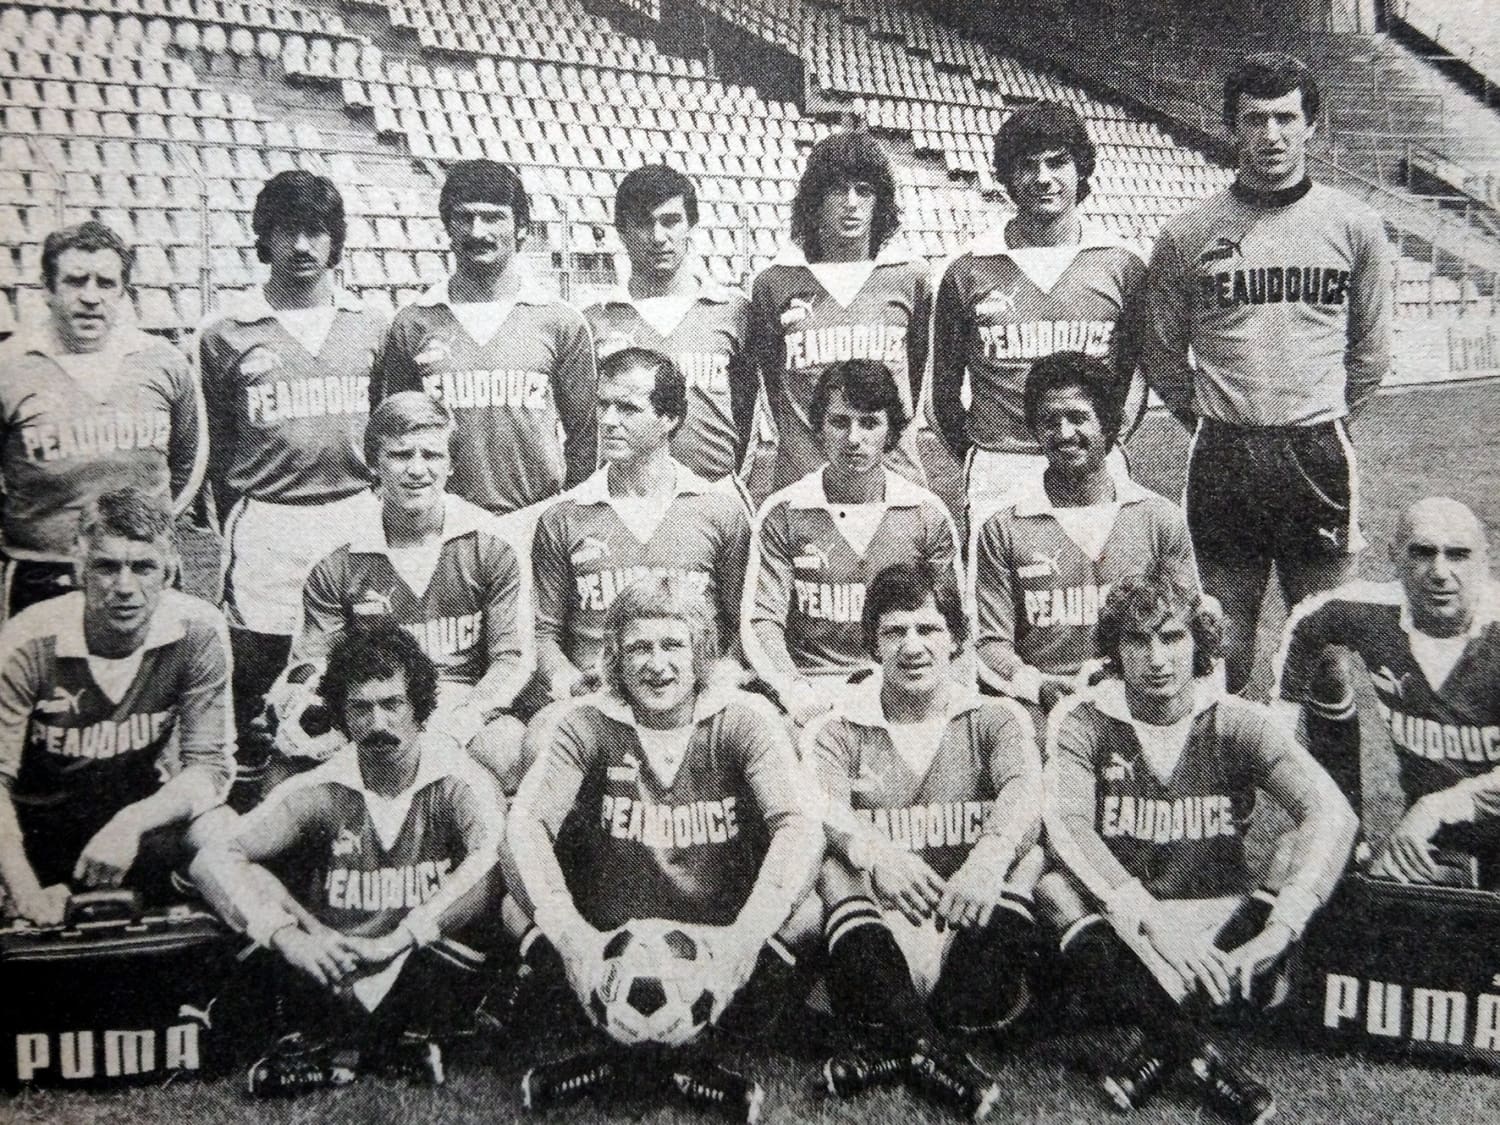 La maglia Peaudouce LOSC 1979 è una classica maglia da calcio!